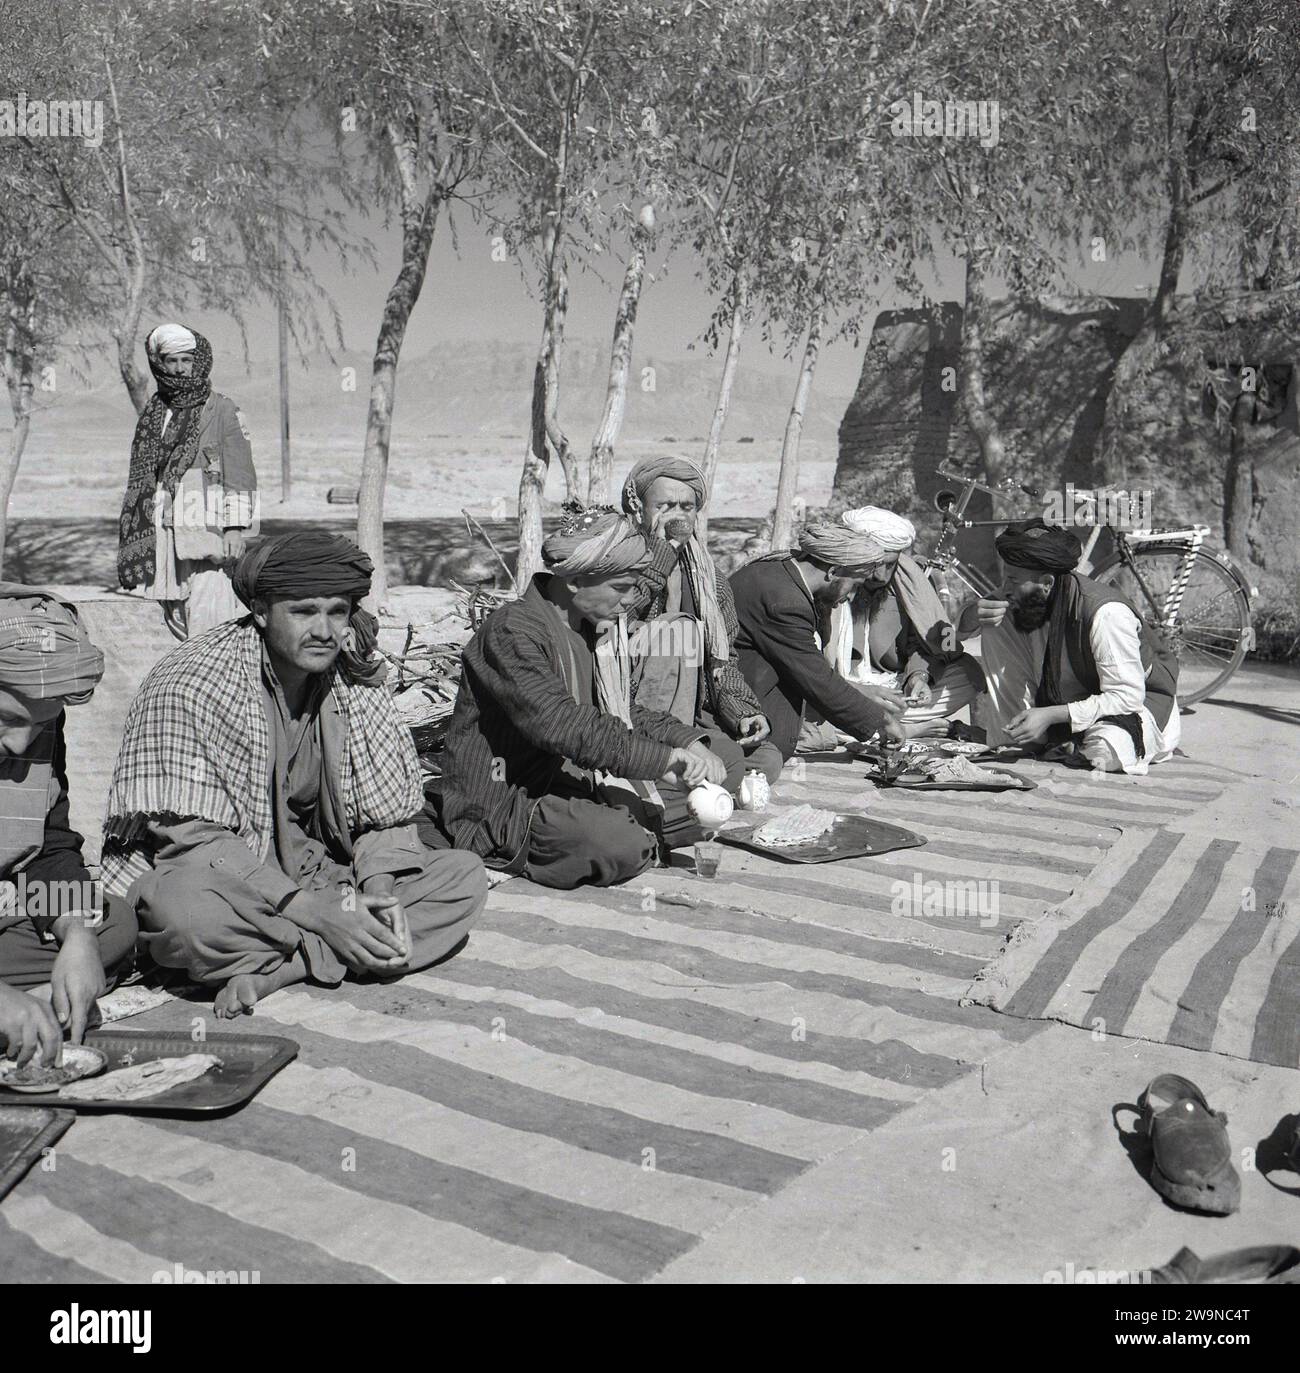 1950er Jahre, historische, männliche afghanen in traditioneller Kleidung, Kopfbedeckung und barfuß, sitzen auf Teppichen auf dem Boden draußen und essen, Afghanistan. Die Mehrheit der Afghanen lebt außerhalb der Städte in Stammesgemeinden, lebt traditionelle, bäuerliche llfestyles, in einer männlich dominierten, hoch patriarchalischen Kultur. Als größte ethnische Gruppe des Landes haben die Paschtunen strenge Ehrenregeln und die Auslegung des islamischen und der Scharia-Rechts. Stockfoto